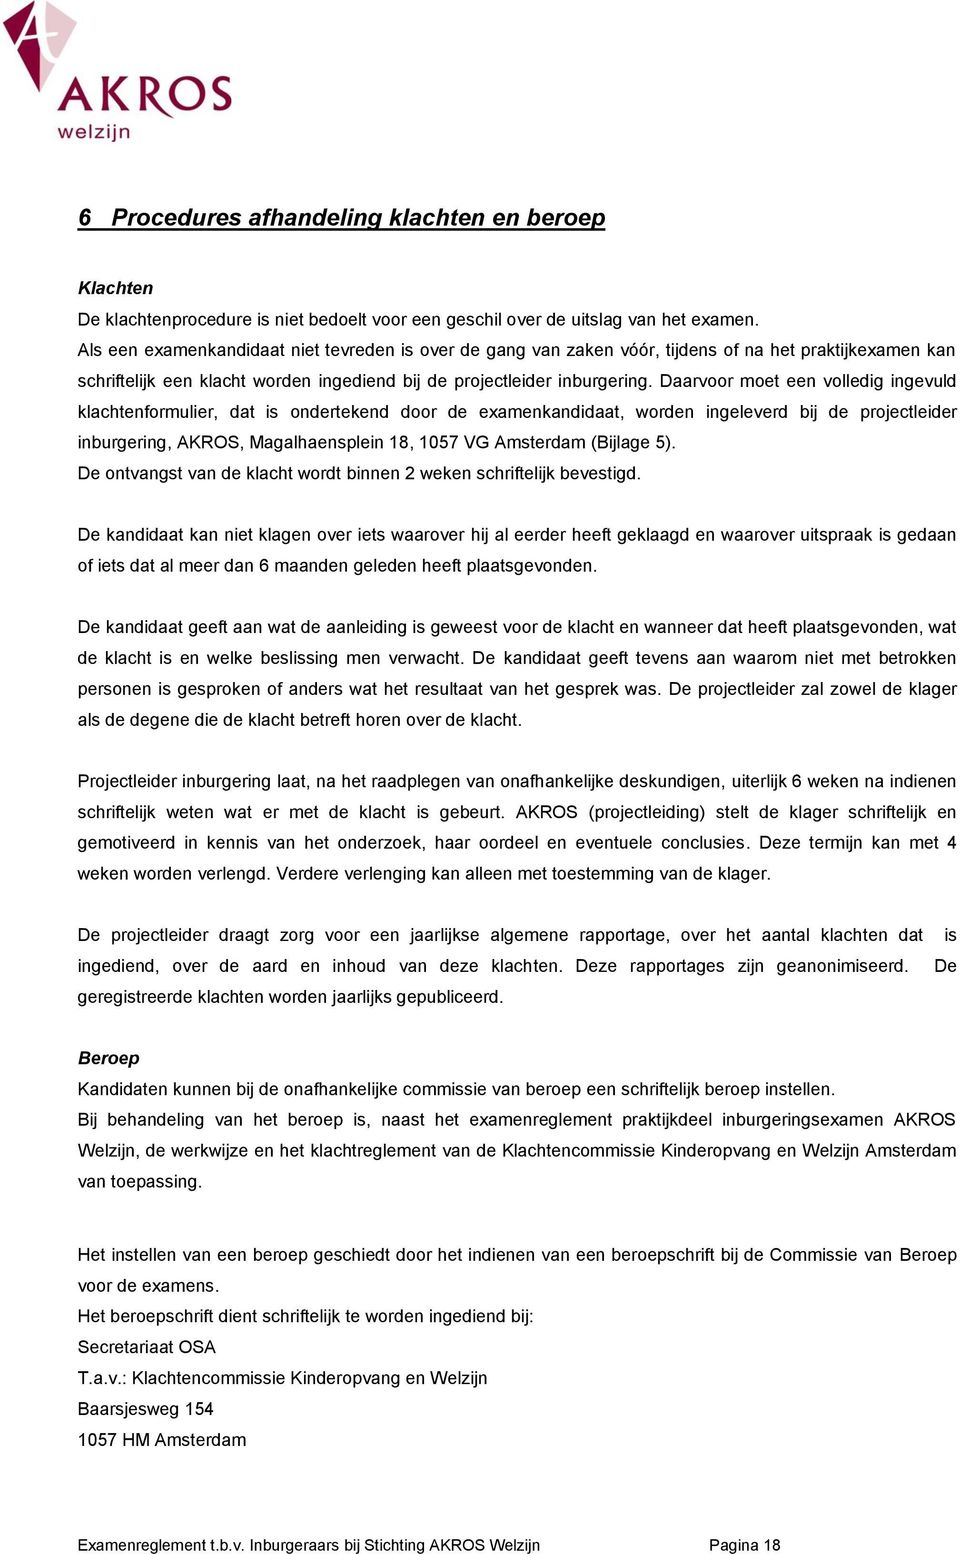 Daarvoor moet een volledig ingevuld klachtenformulier, dat is ondertekend door de examenkandidaat, worden ingeleverd bij de projectleider inburgering, AKROS, Magalhaensplein 18, 1057 VG Amsterdam